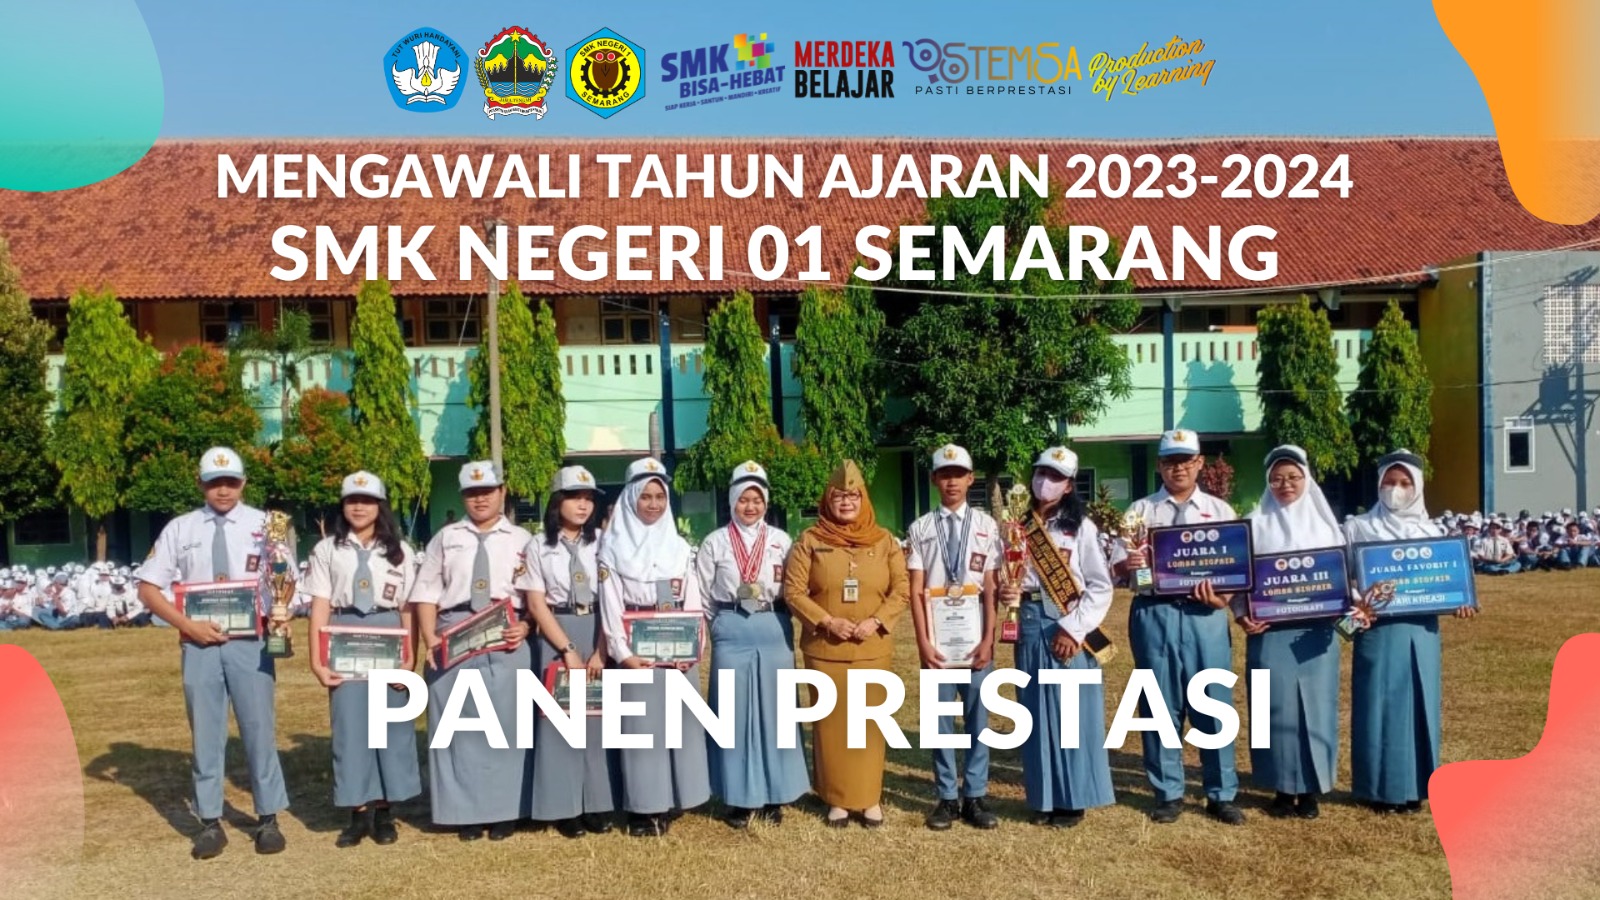 You are currently viewing Mengawali Tahun Ajaran 2023-2024 SMK Negeri 01 Semarang Panen Prestasi